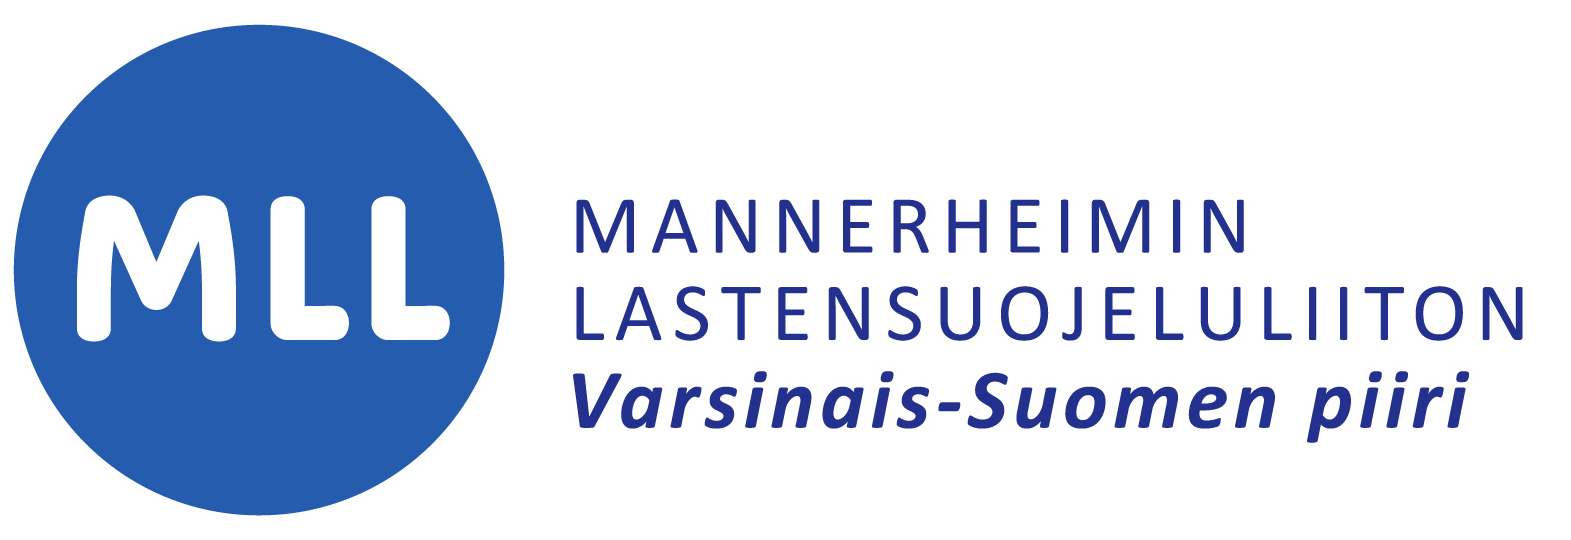 Mannerheimin Lastensuojeluliiton logo.